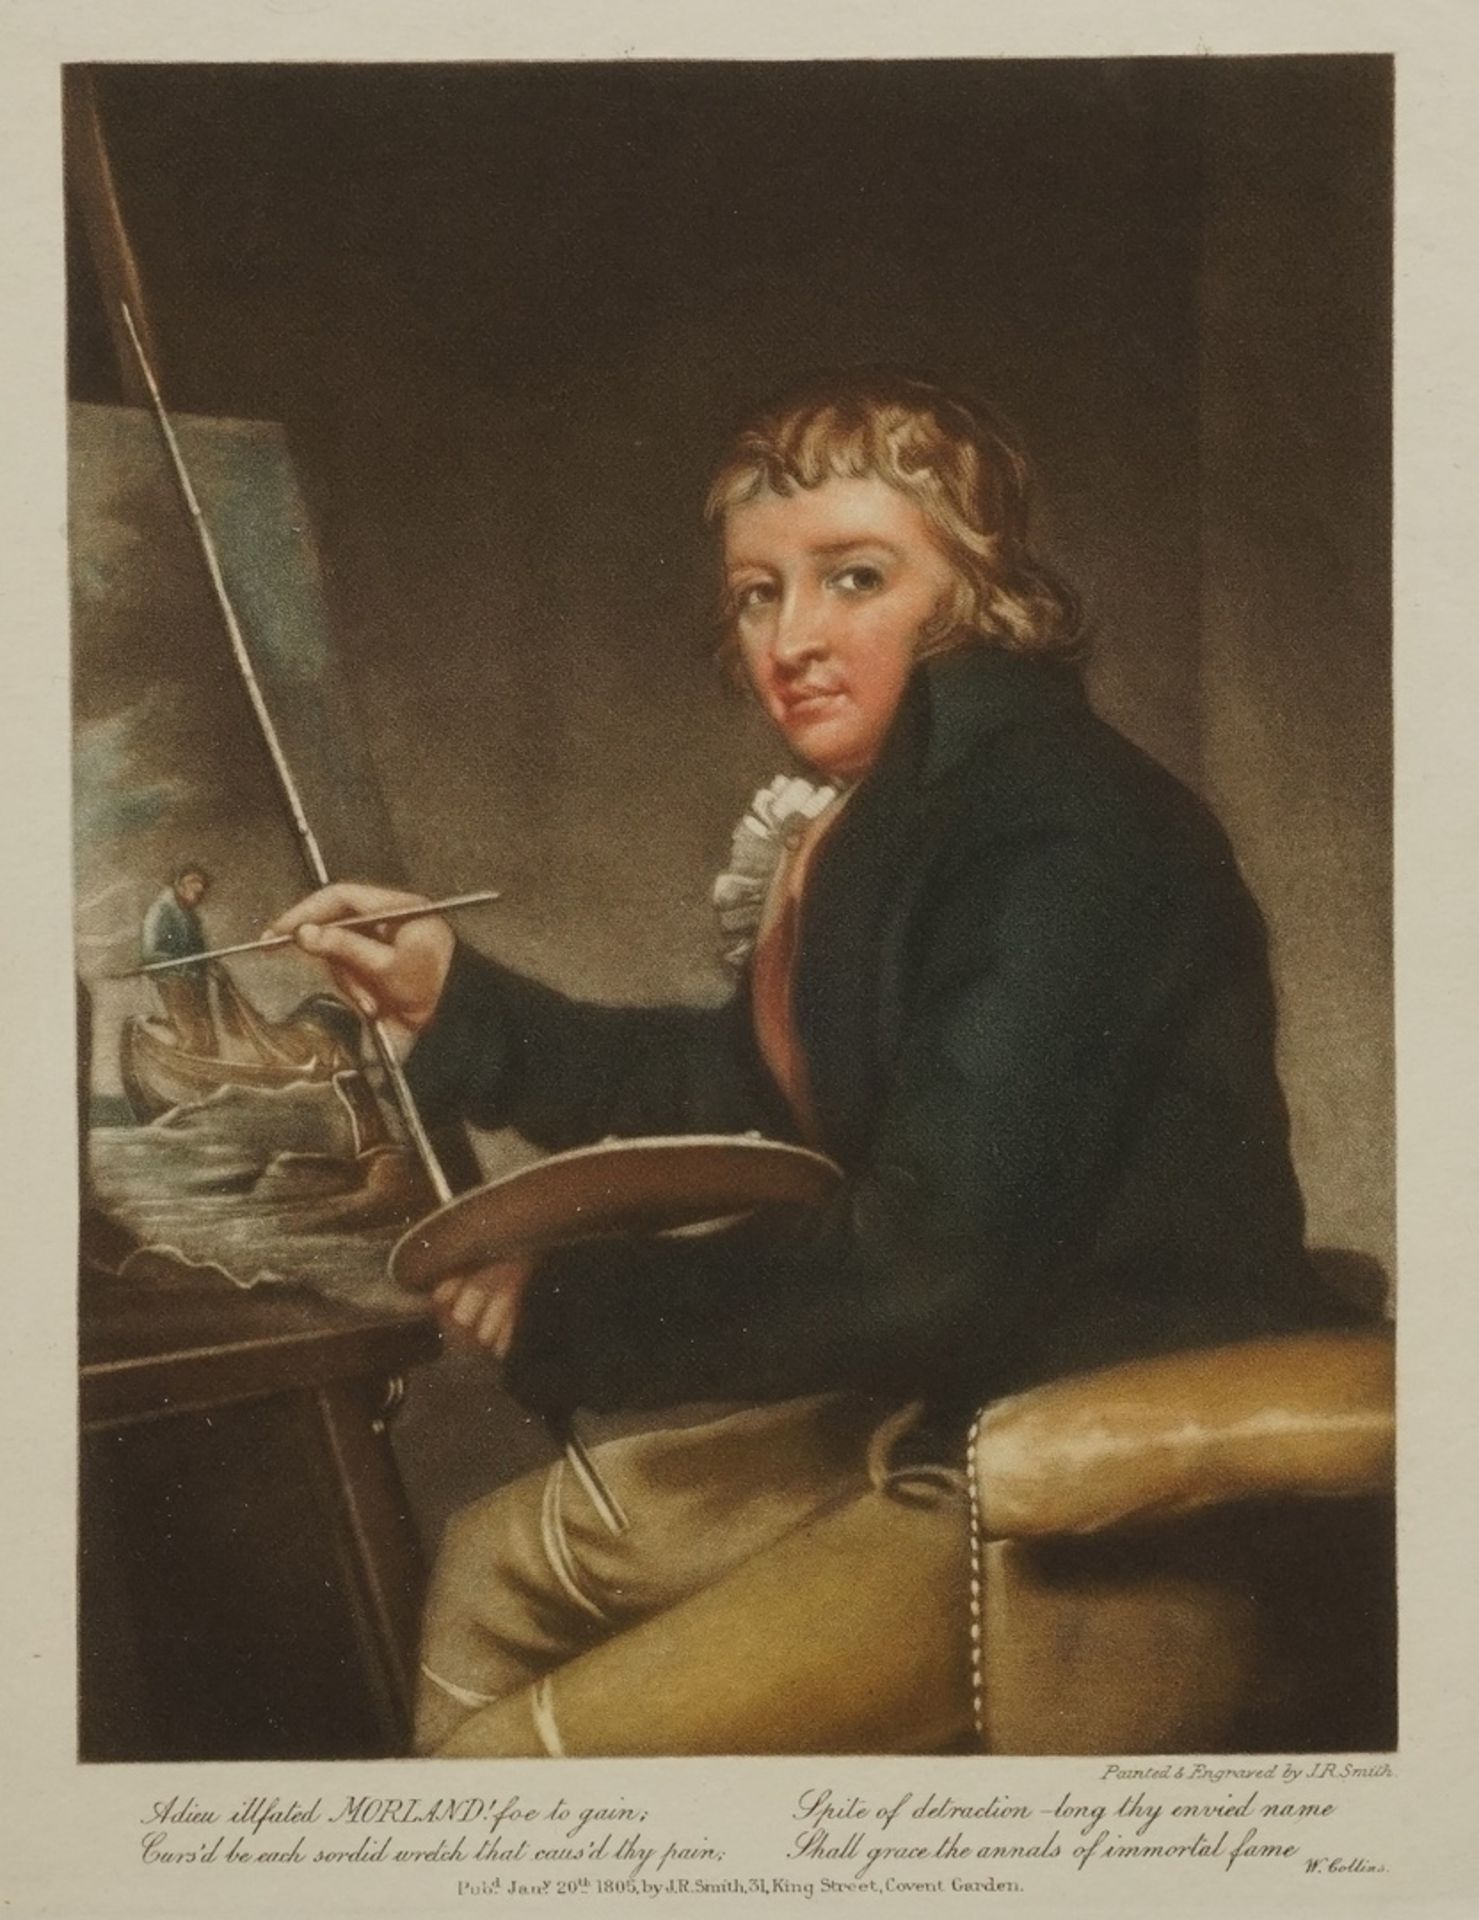 J. R. Smith, "Portrait des englischen Malers George Morland"Farbaquatinta/Arches, datiert 1805, im